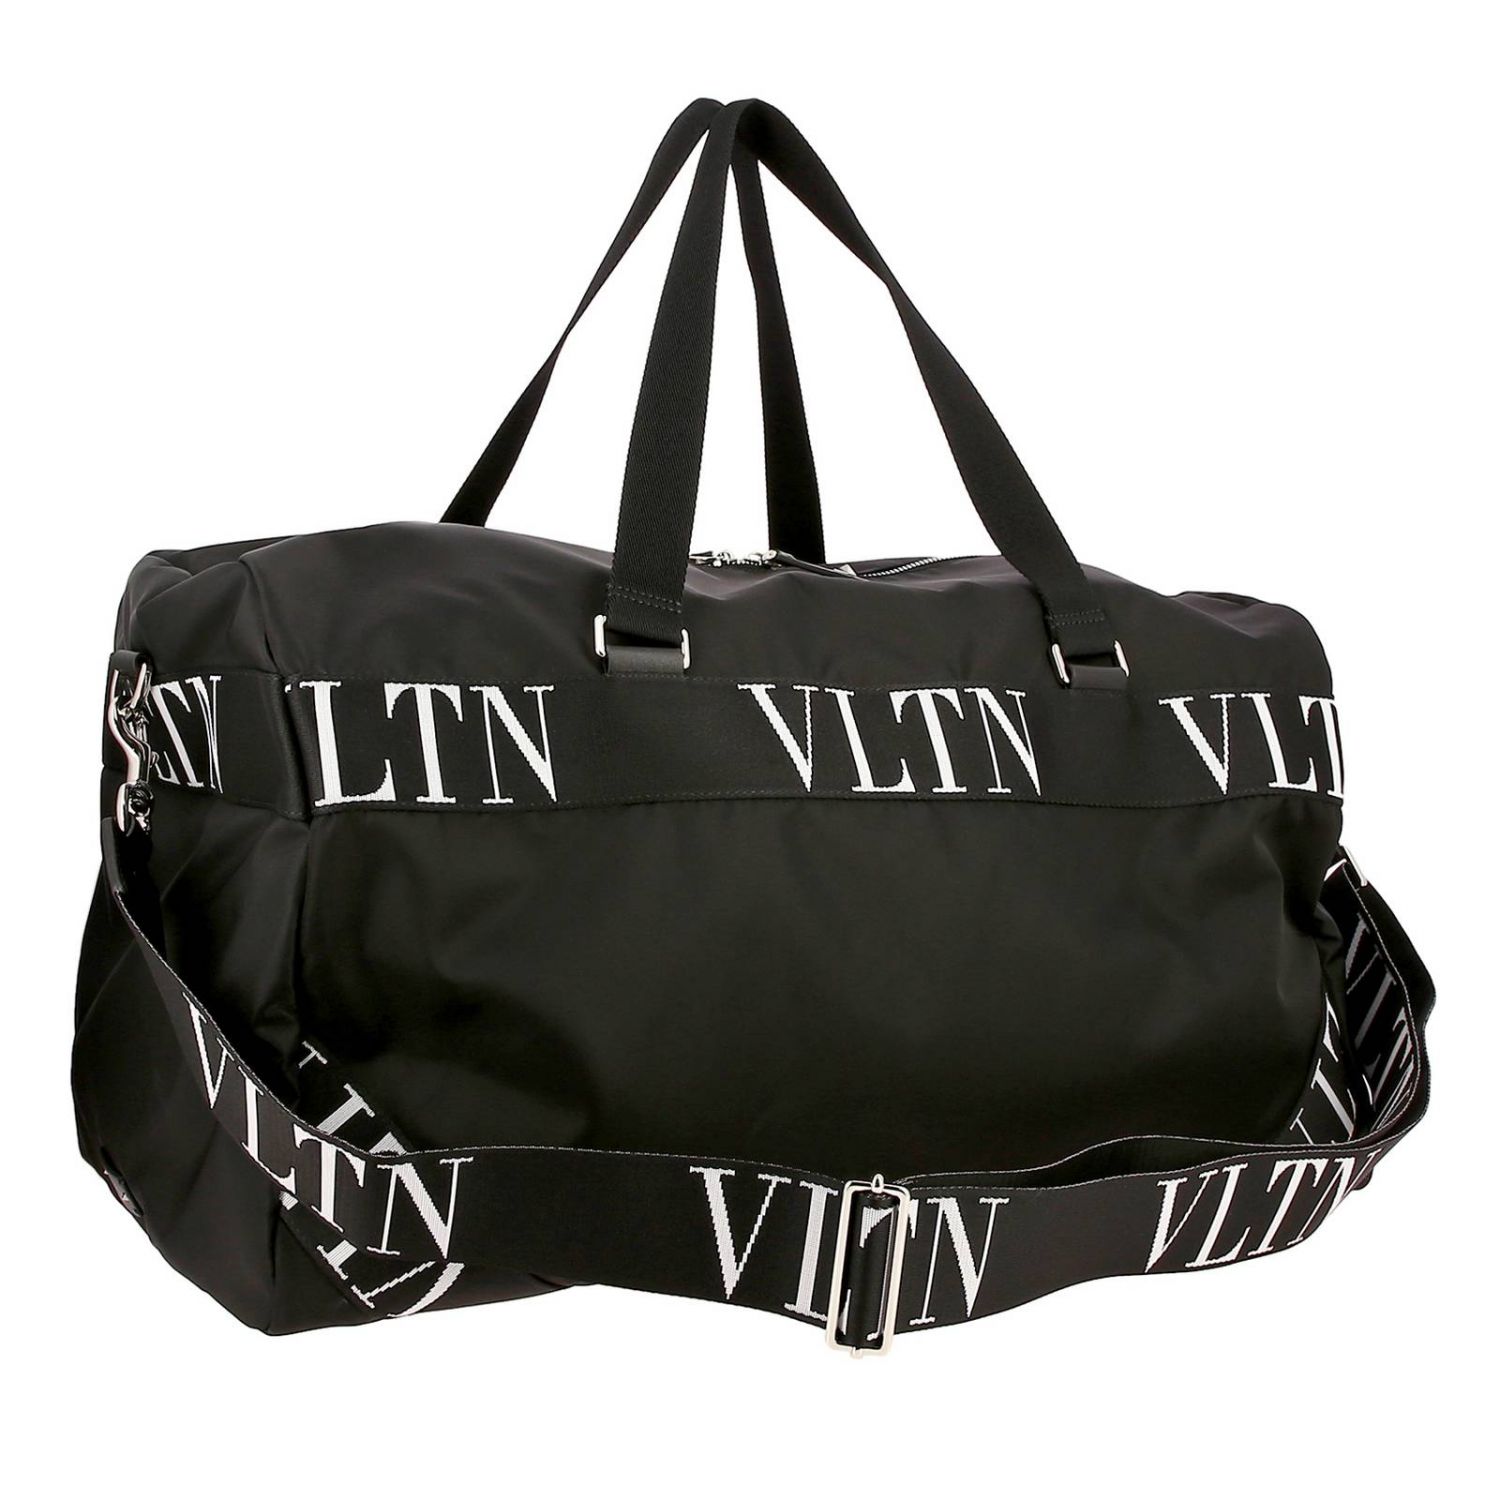 VALENTINO GARAVANI: nylon bag with VLTN bands - Black | Valentino ...